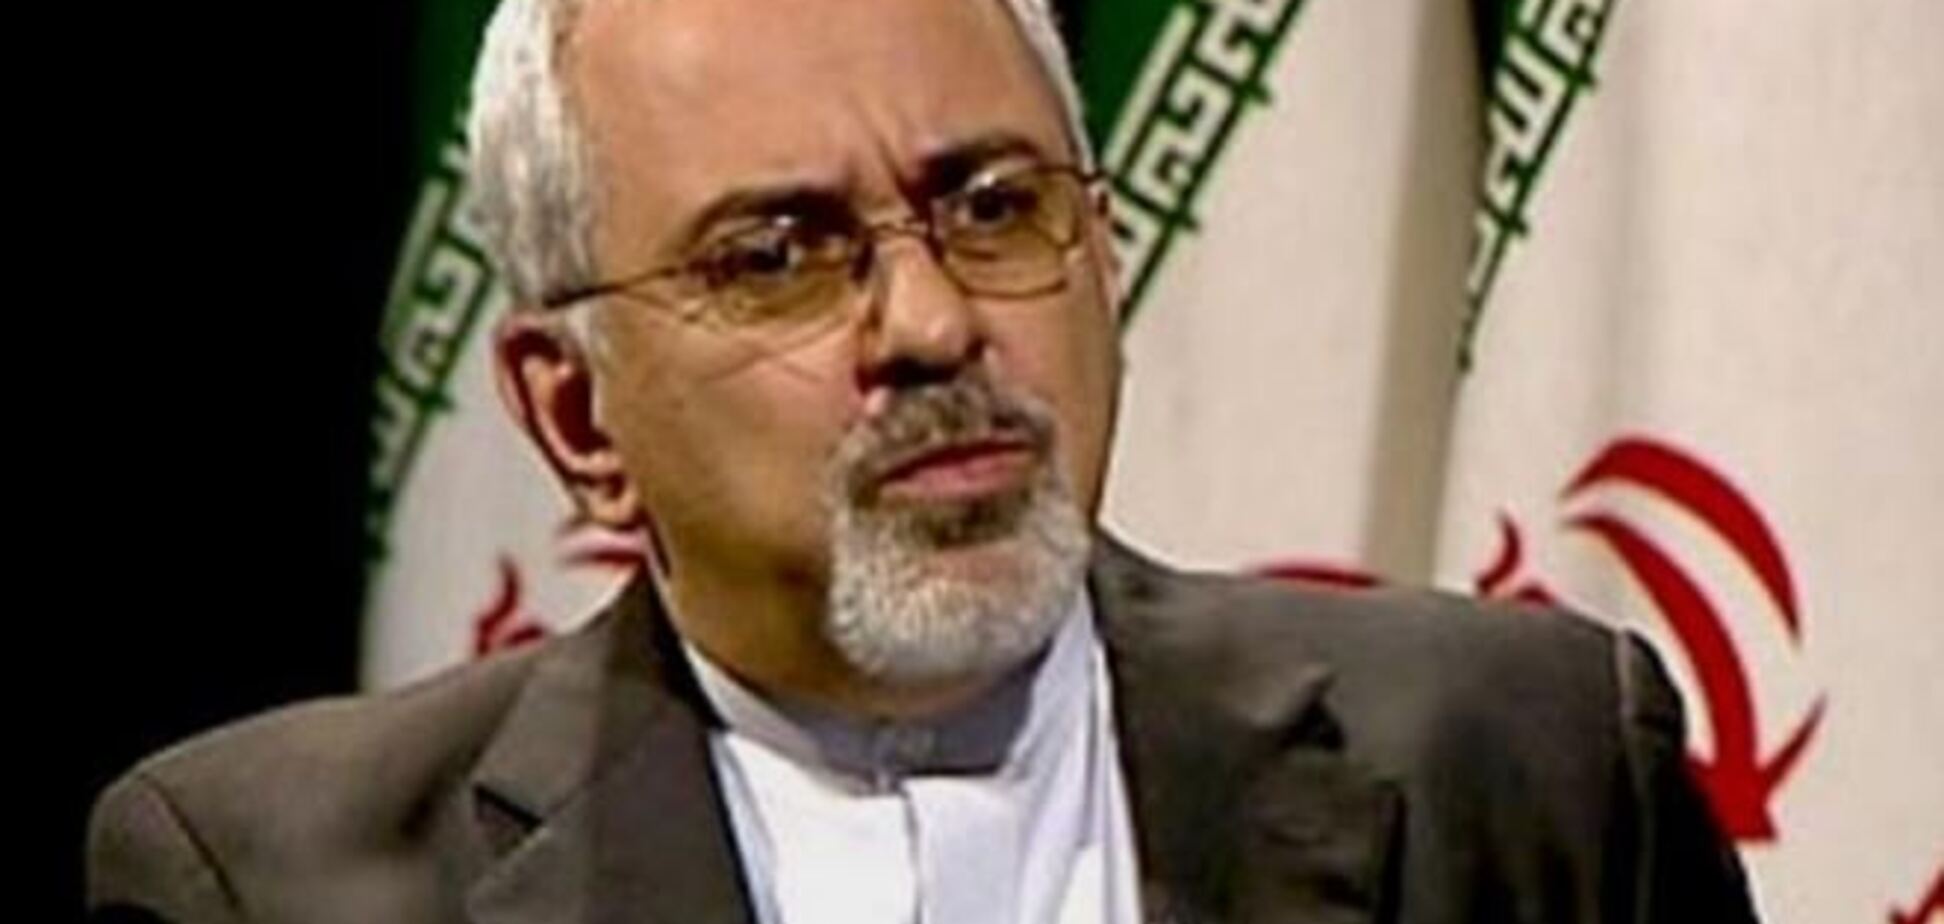 Тегеран не намерен прекращать обогащение урана - МИД Ирана